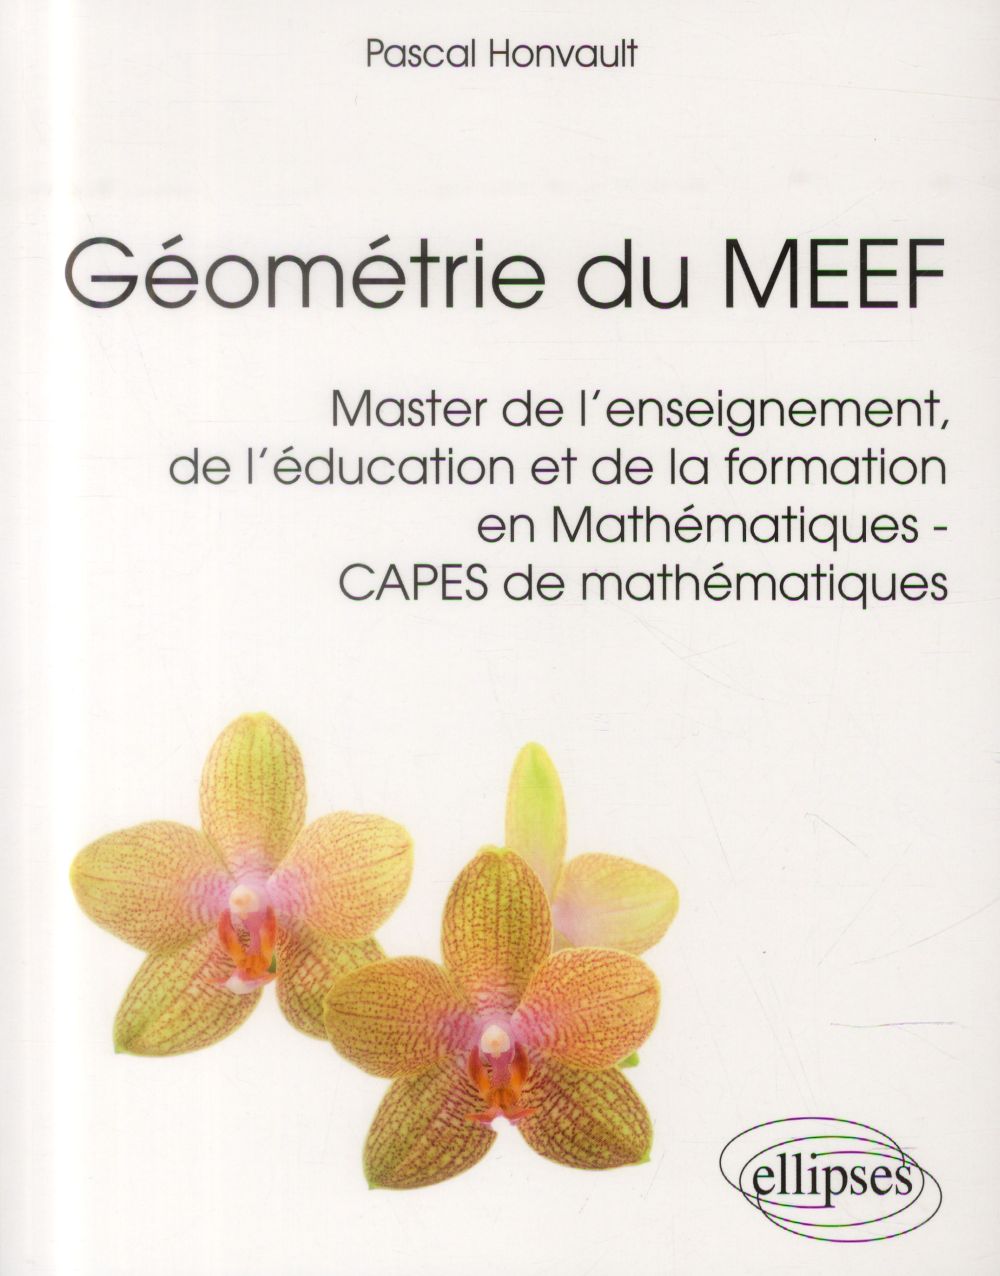 GEOMETRIE DU MEEF (MASTER DE L'ENSEIGNEMENT, DE L'EDUCATION ET DE LA FORMATION) EN MATHEMATIQUES - C